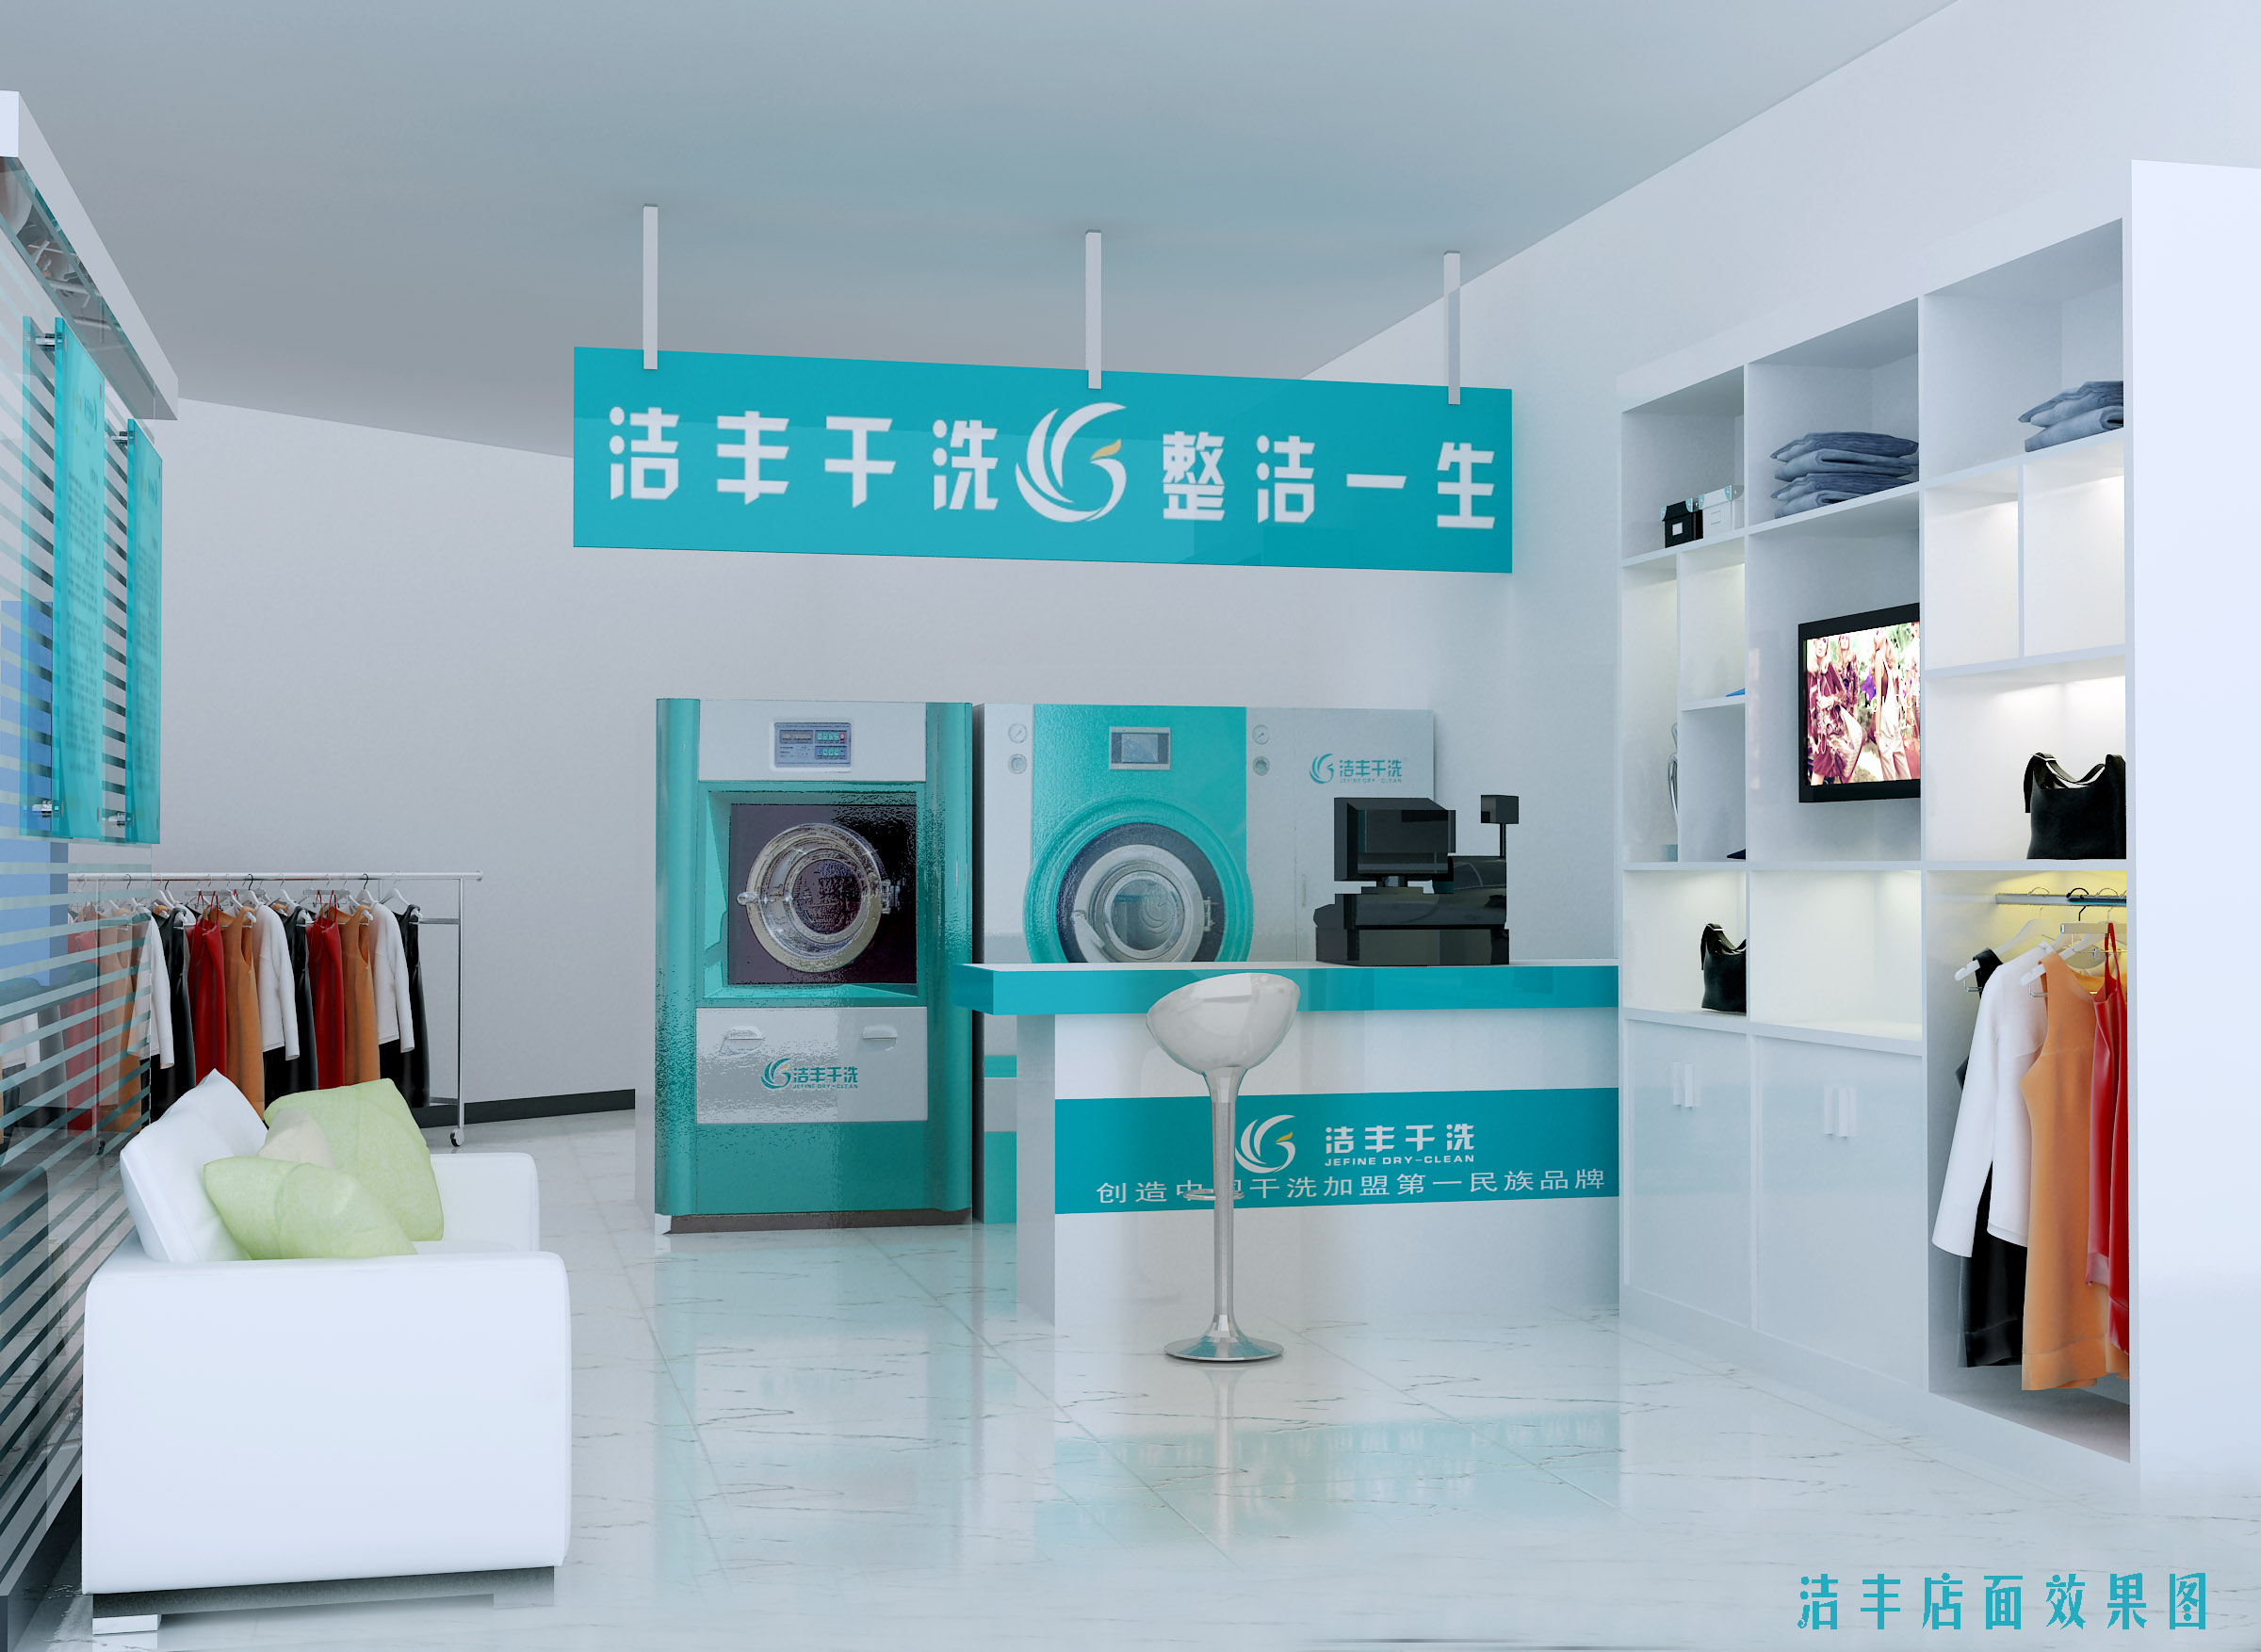 洗衣粉生产线 - 液洗生产线 - 浙江美宝工业科技股份有限公司